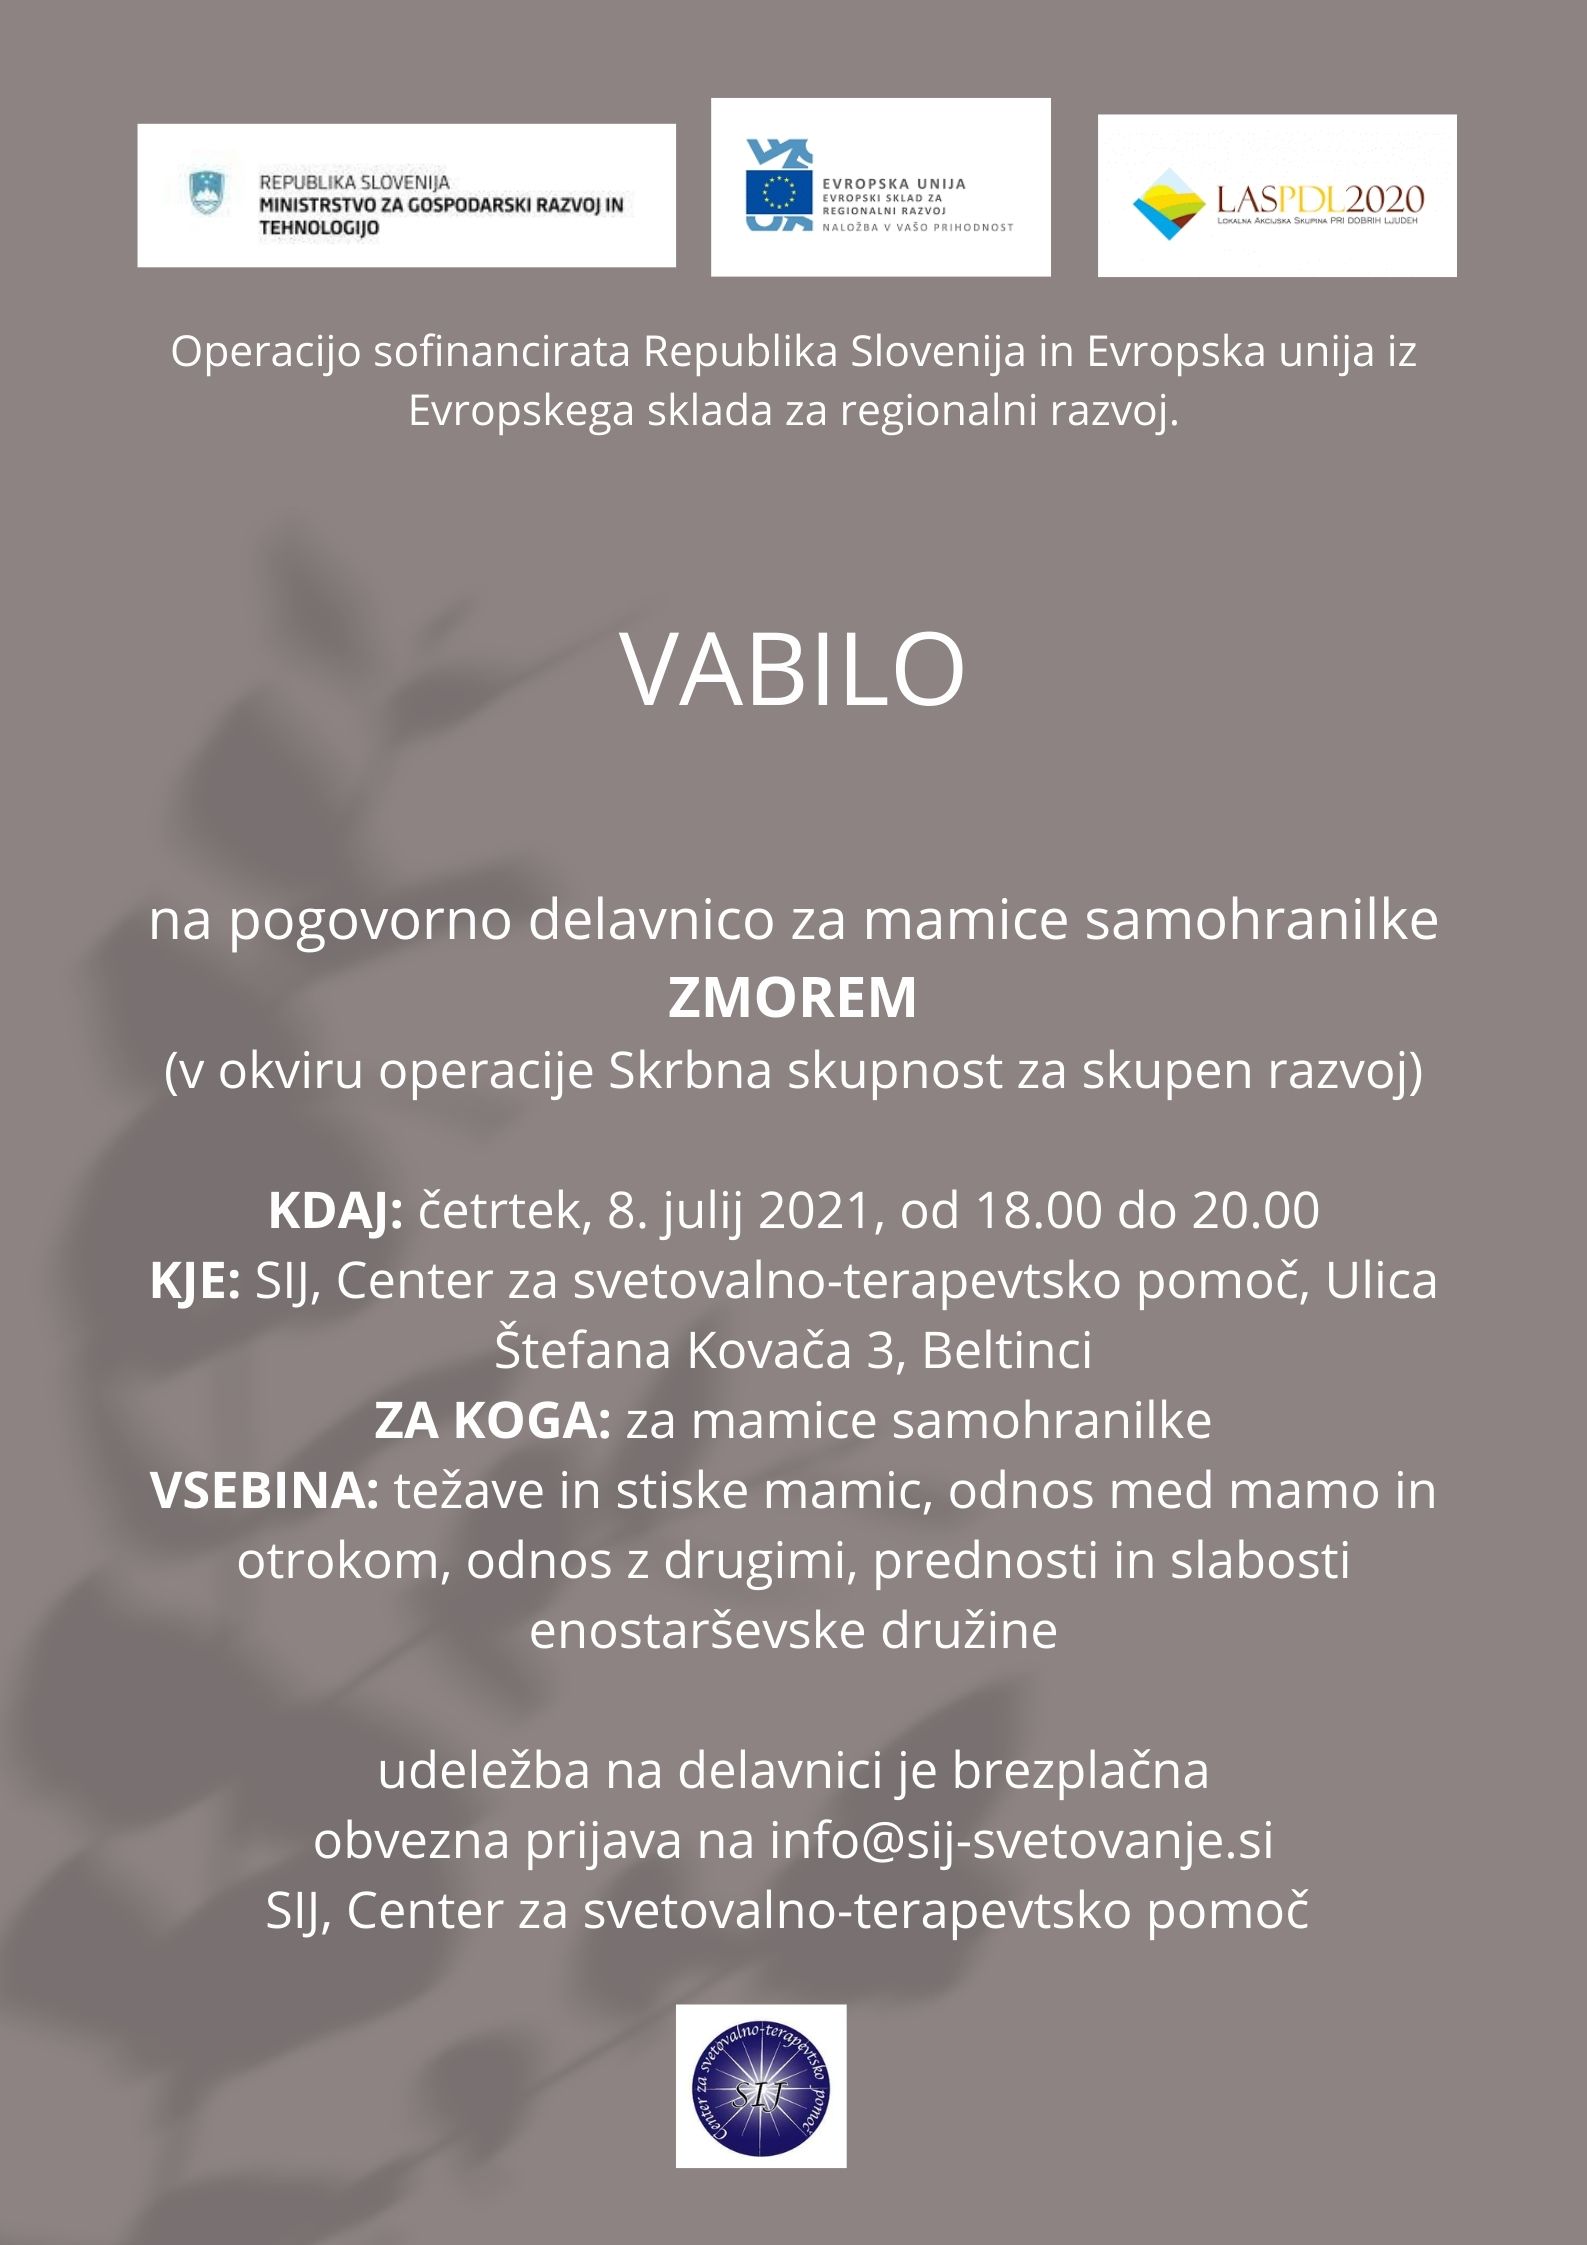 Vabilo2.jpg